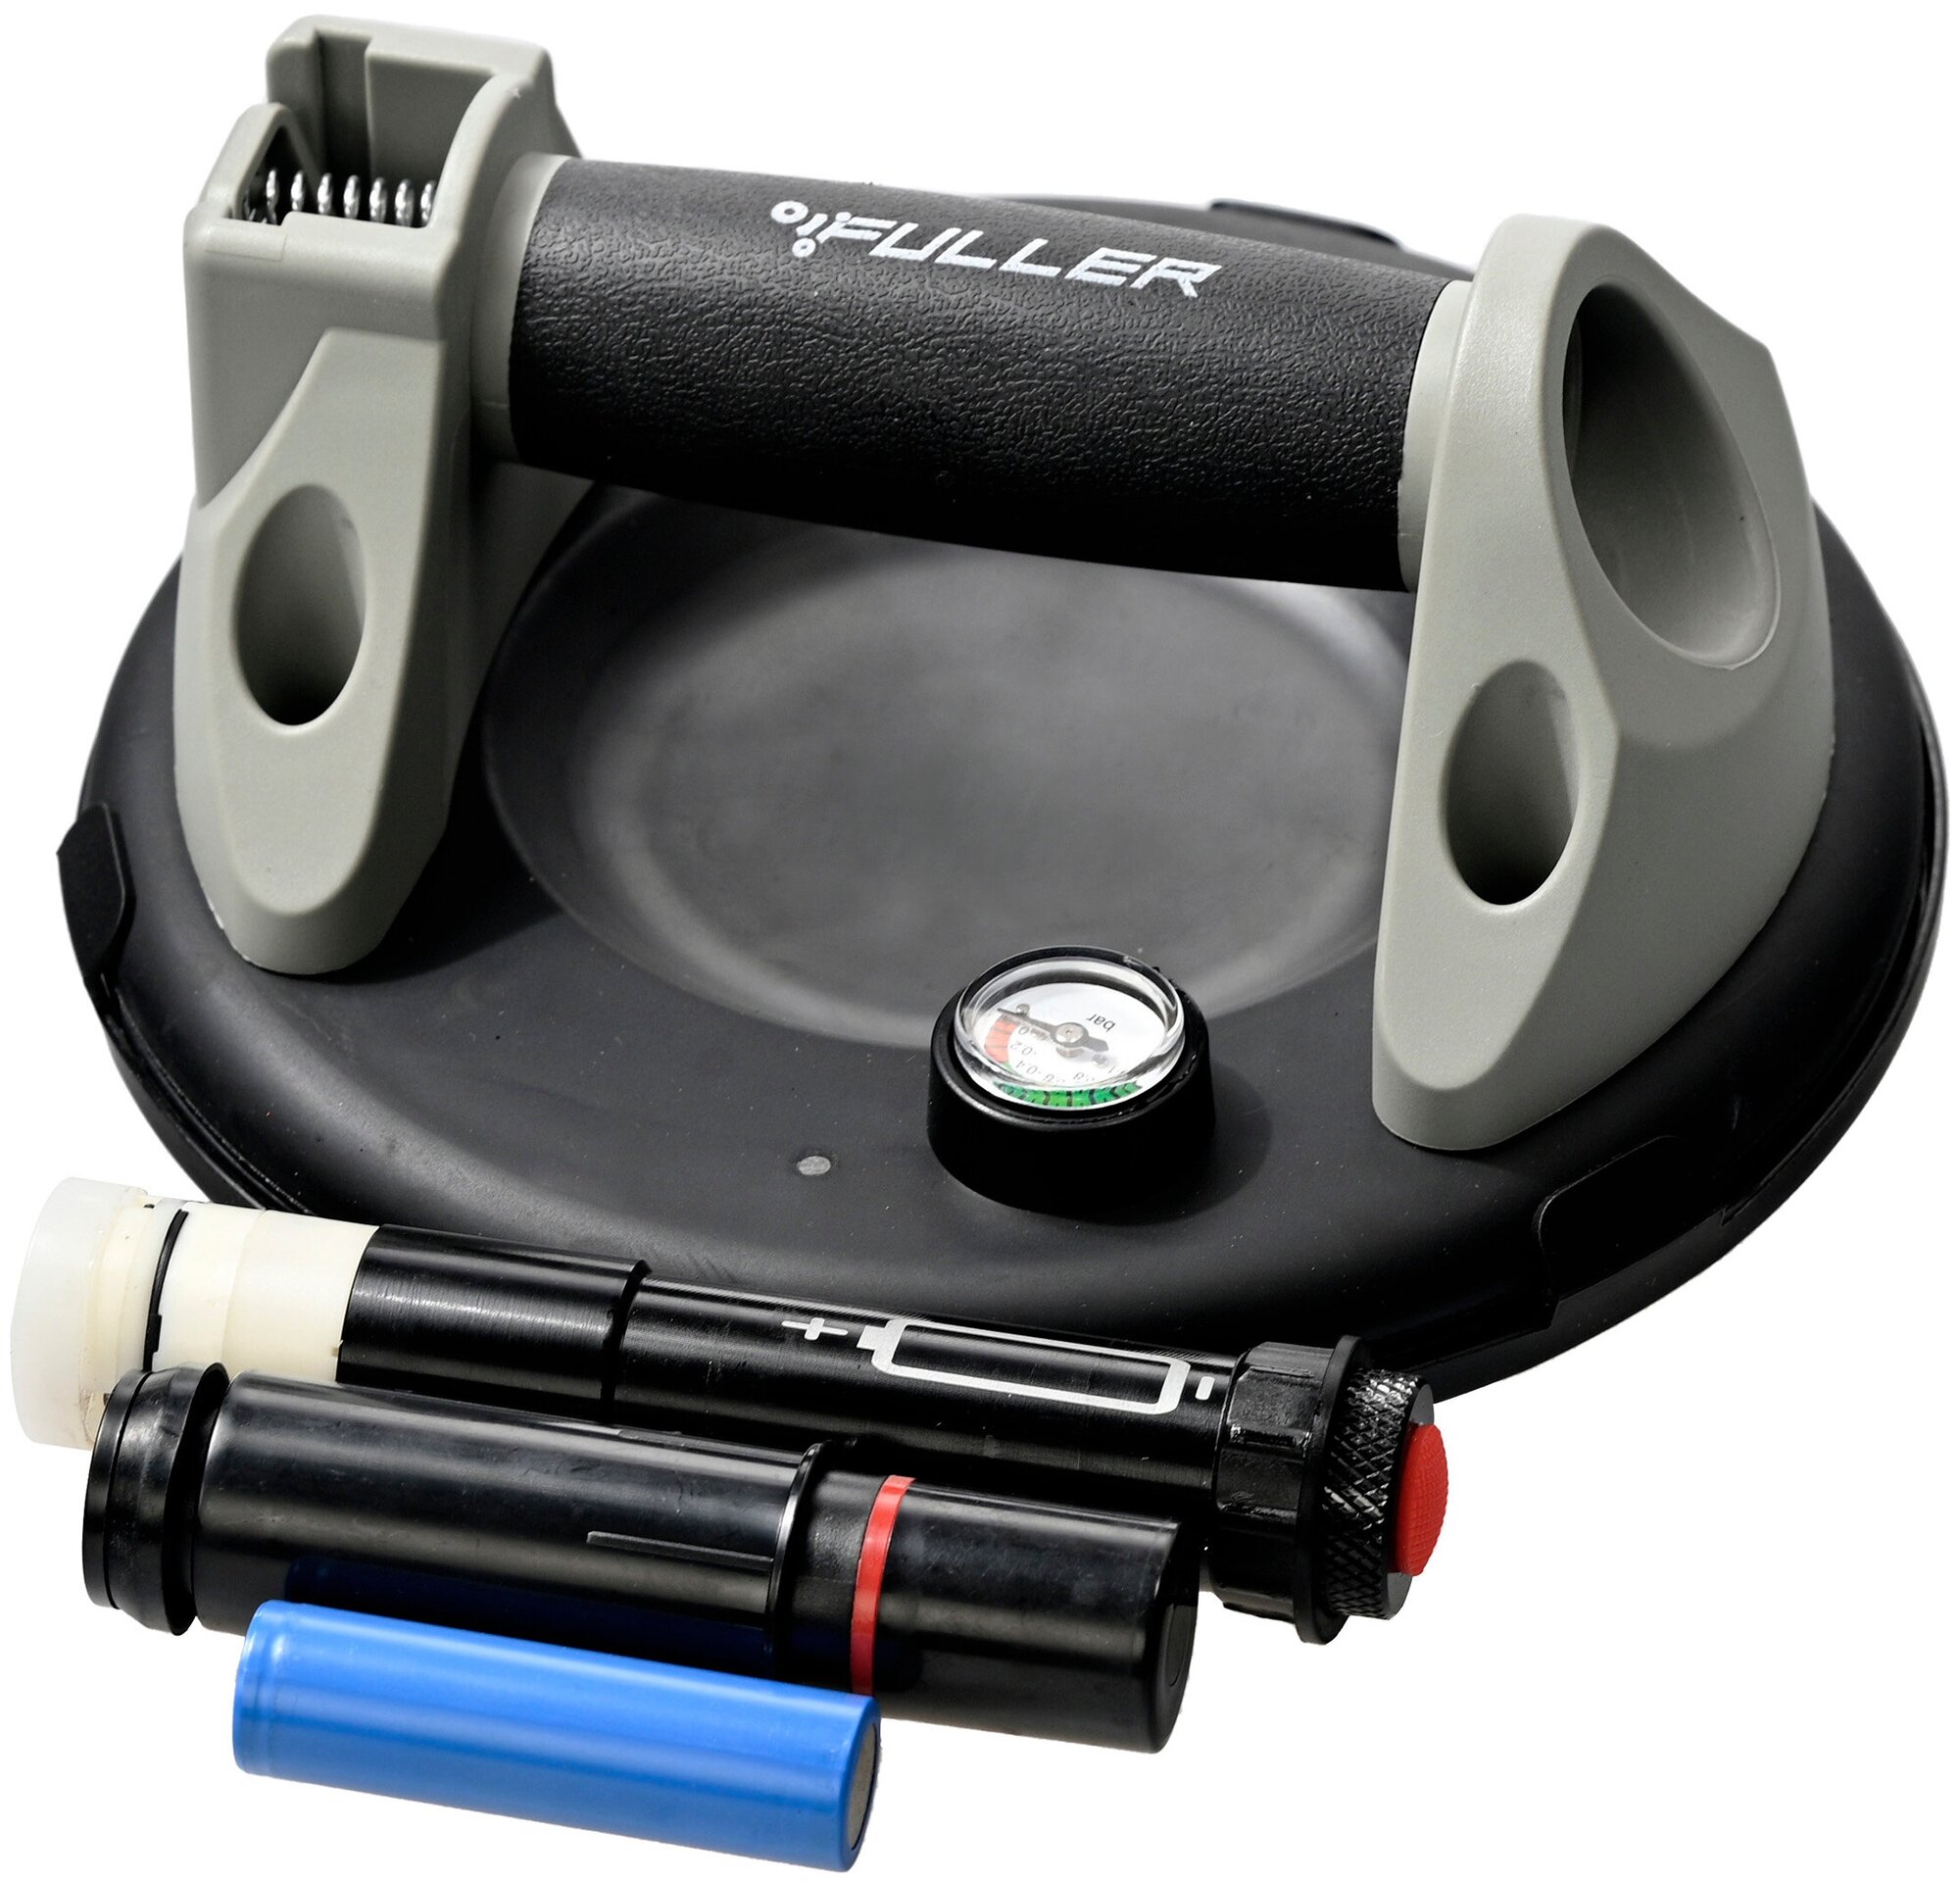 Вакуумная присоска аккумуляторная FULLER V400PRO для укладки плитки и переноски 200 250кг